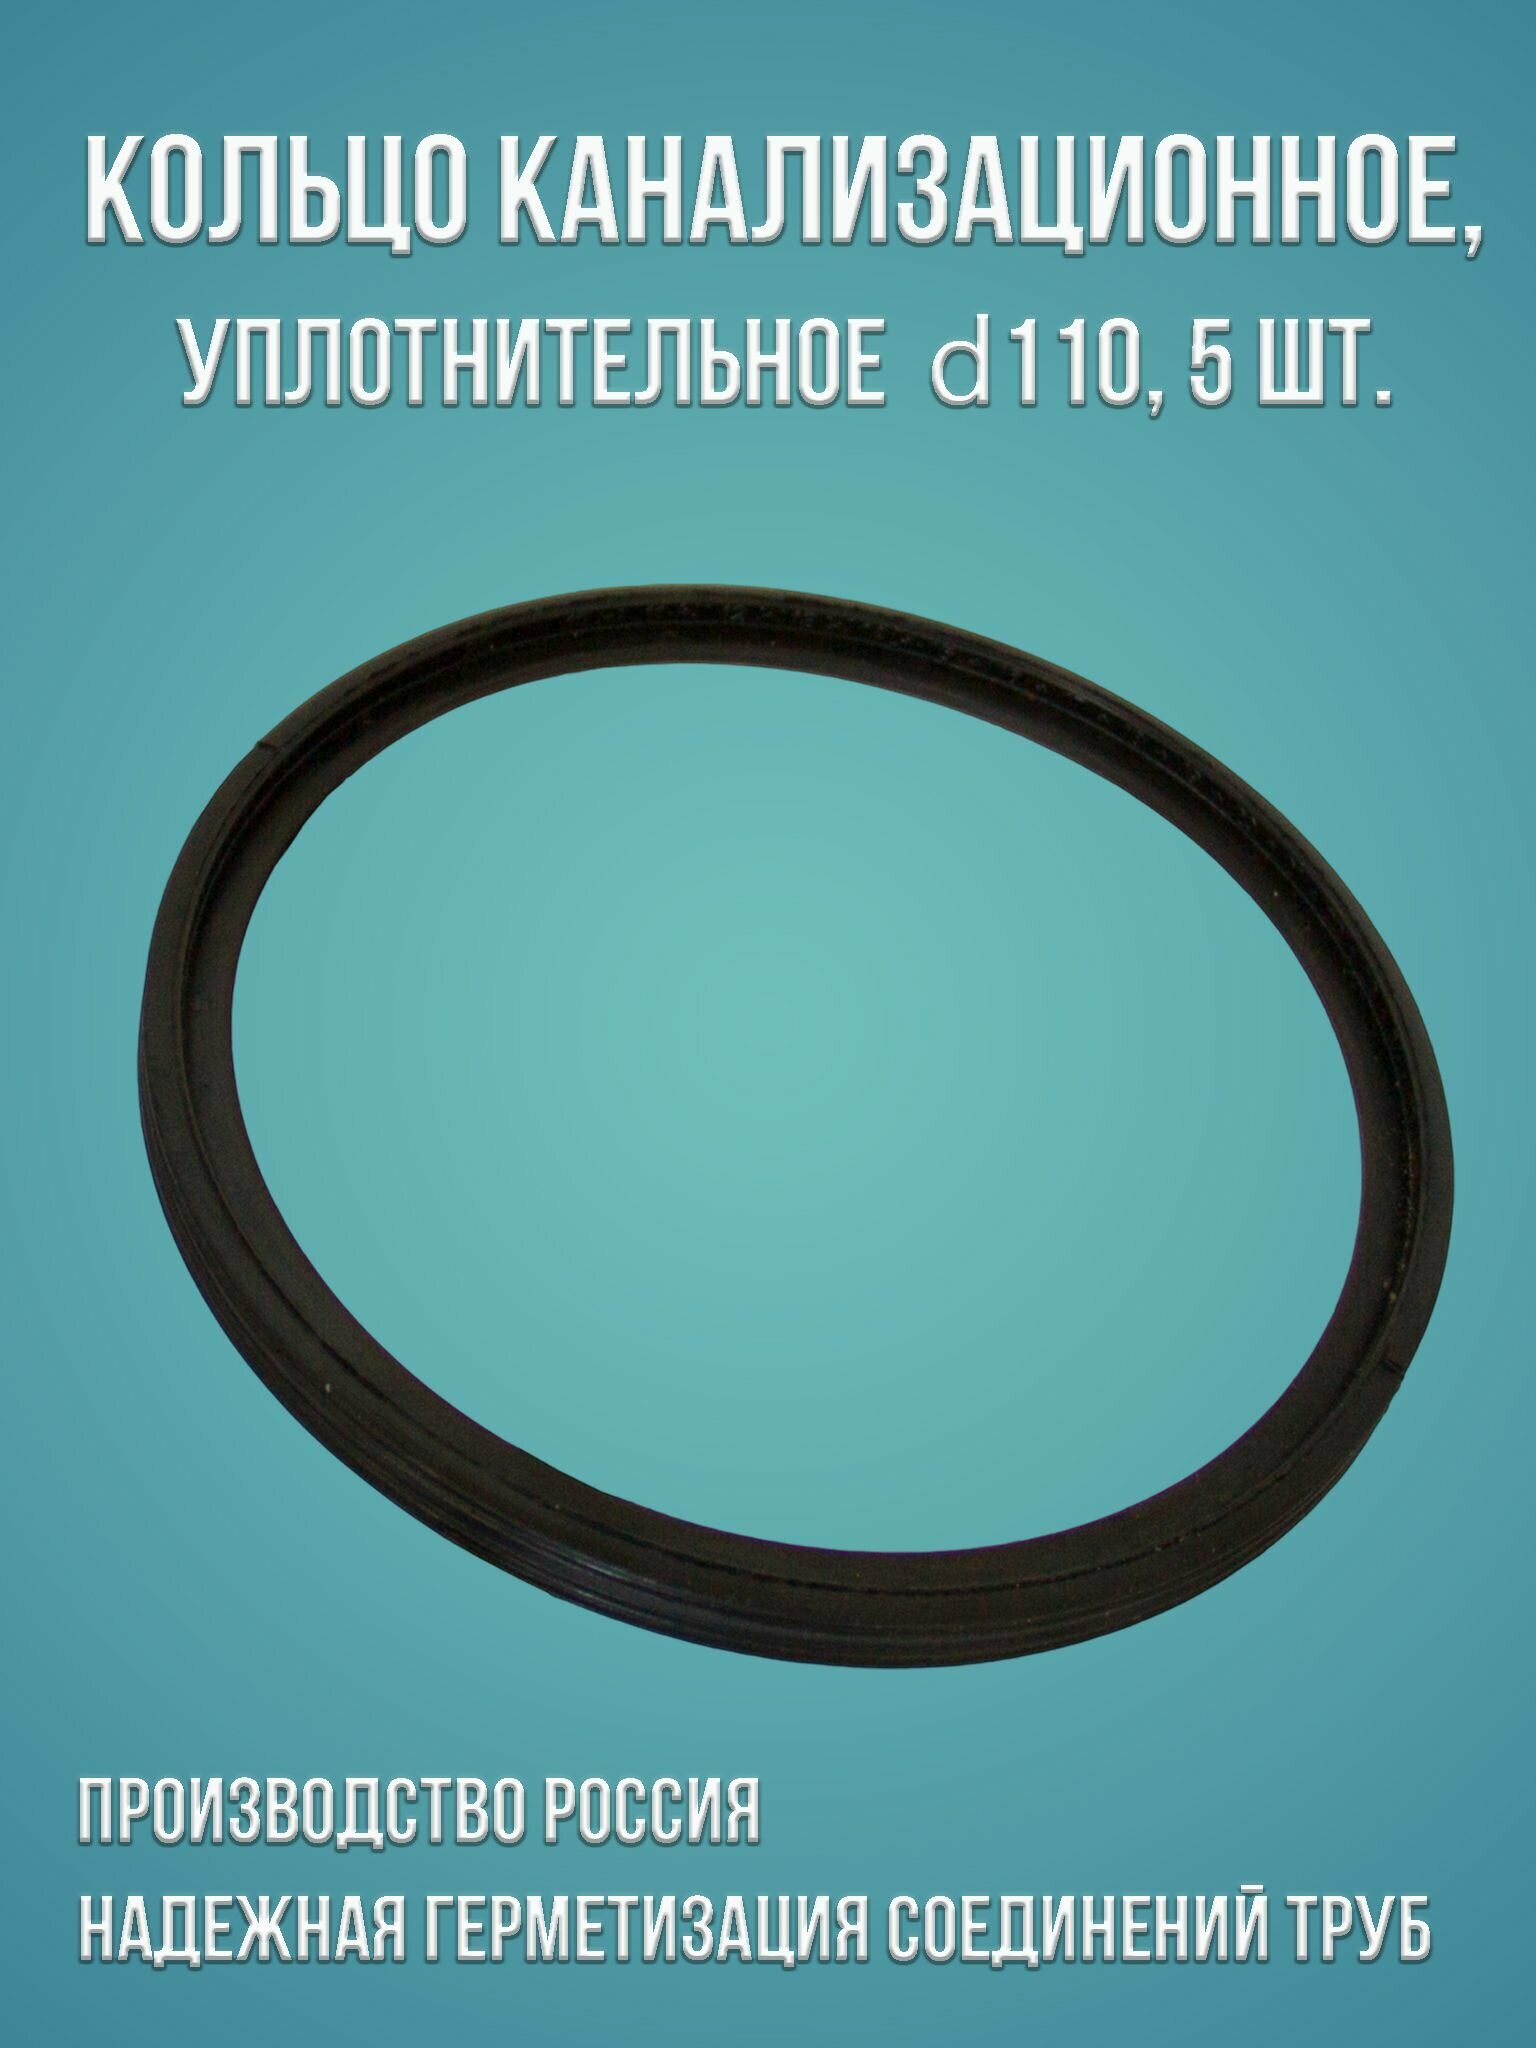 Канализационное кольцо уплотнительное 110, 5 шт.